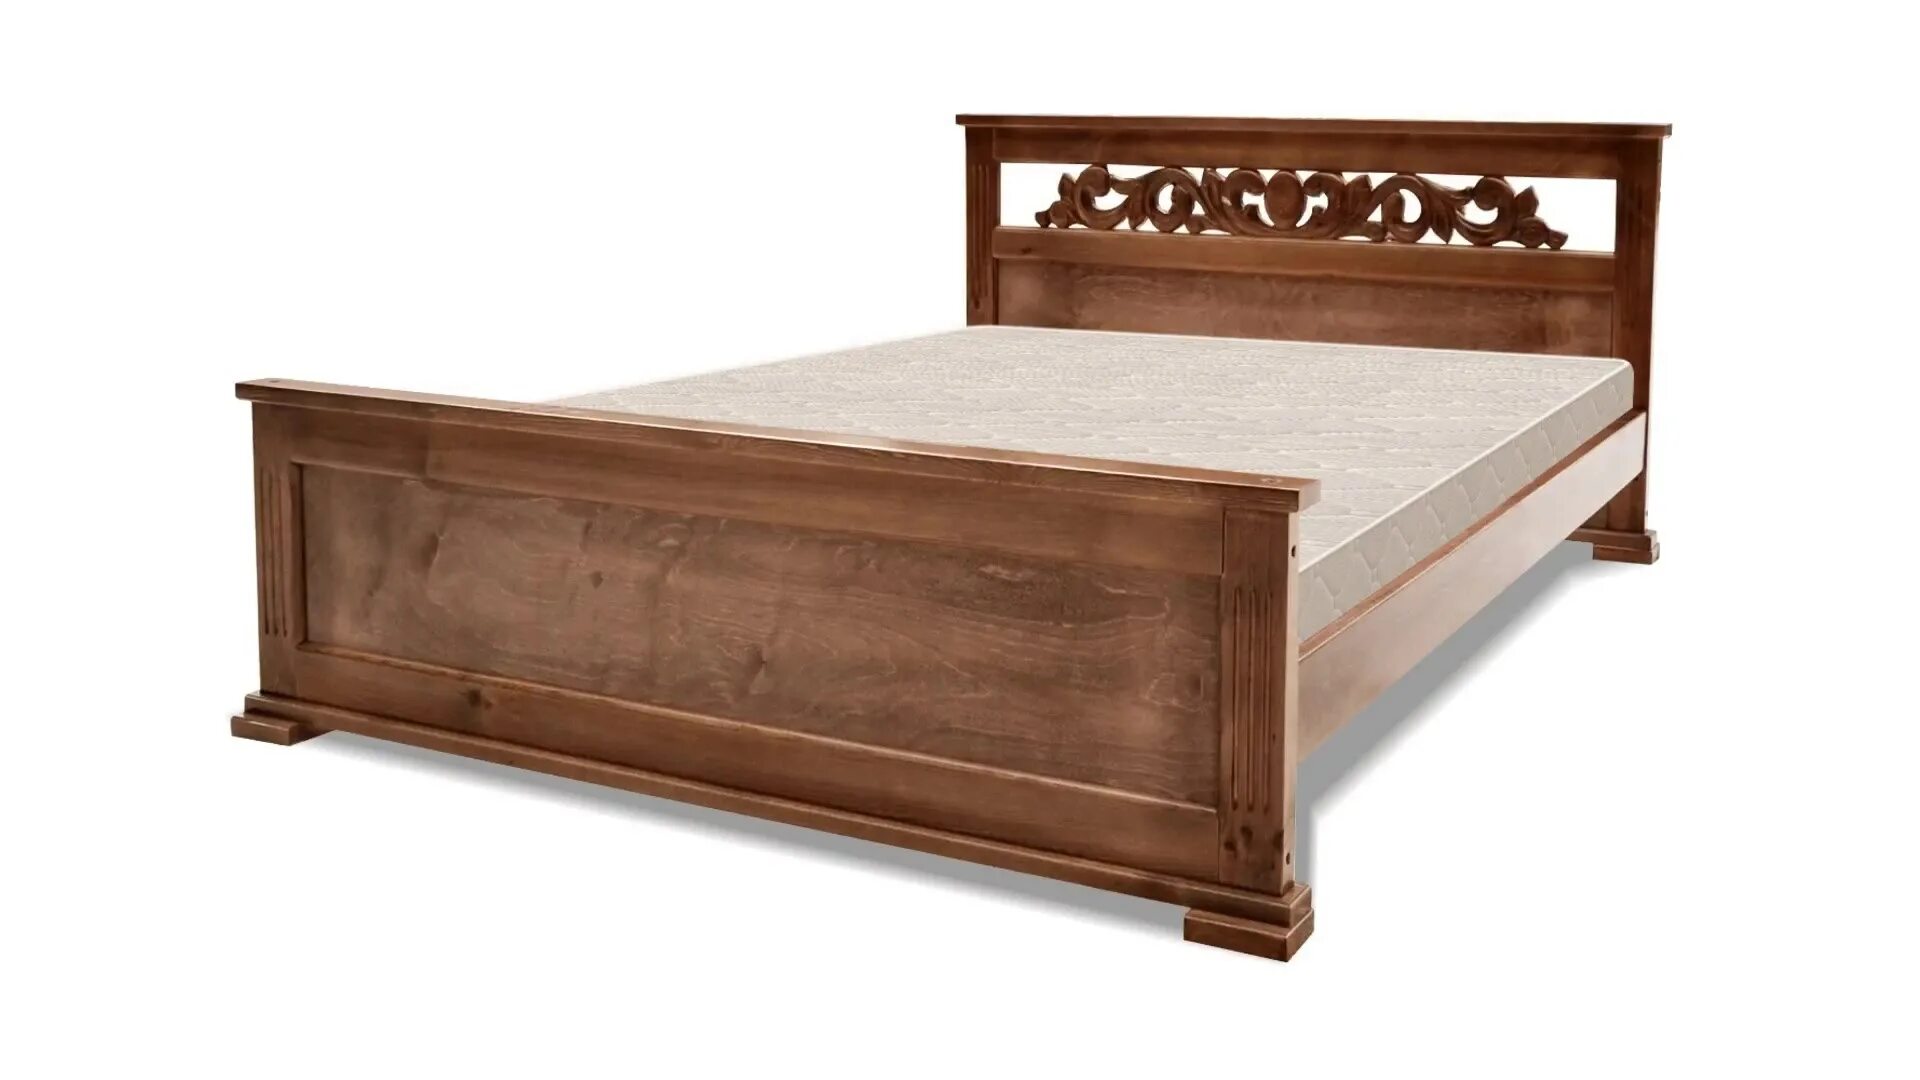 Кровать Арредо Муромские мастера. Купить дерев кровать в спб